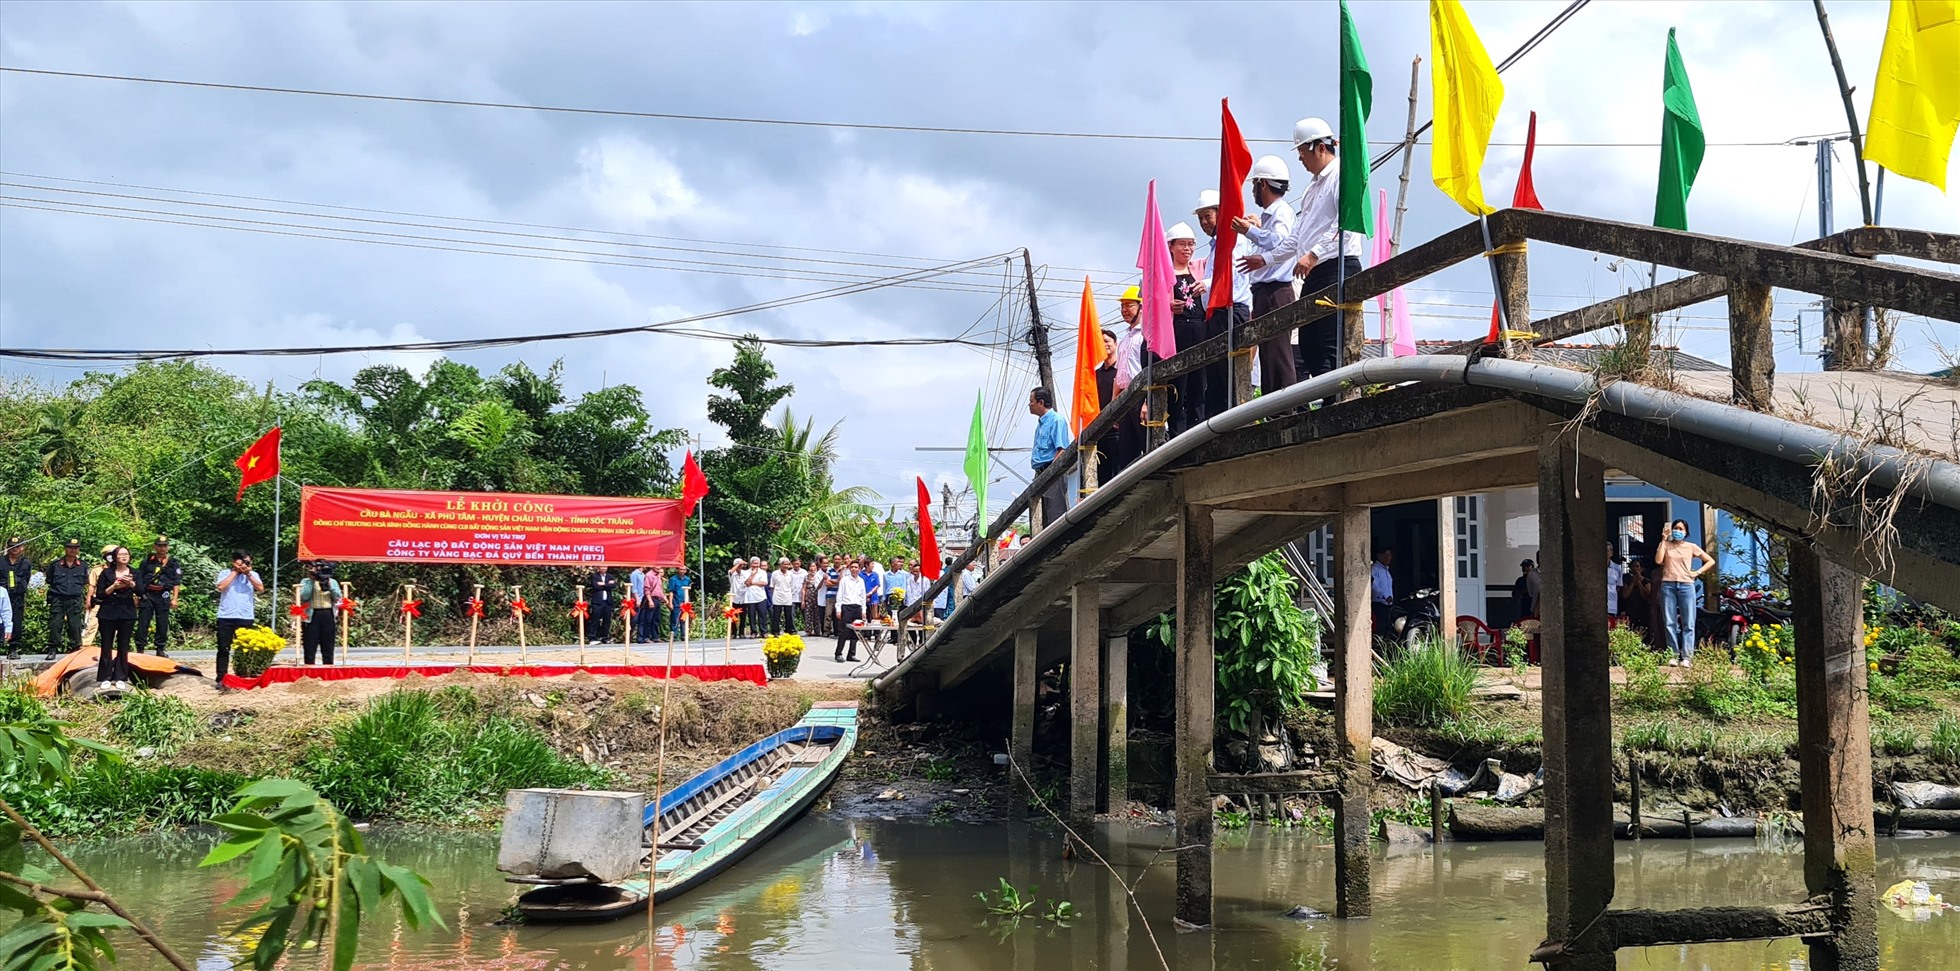 Vị tri cầu hiện hữu nối hai xã Phú Tân và Phú Tâm, huyện Châu Thành, tỉnh Sóc Trăng. Ảnh: Nhật Hồ